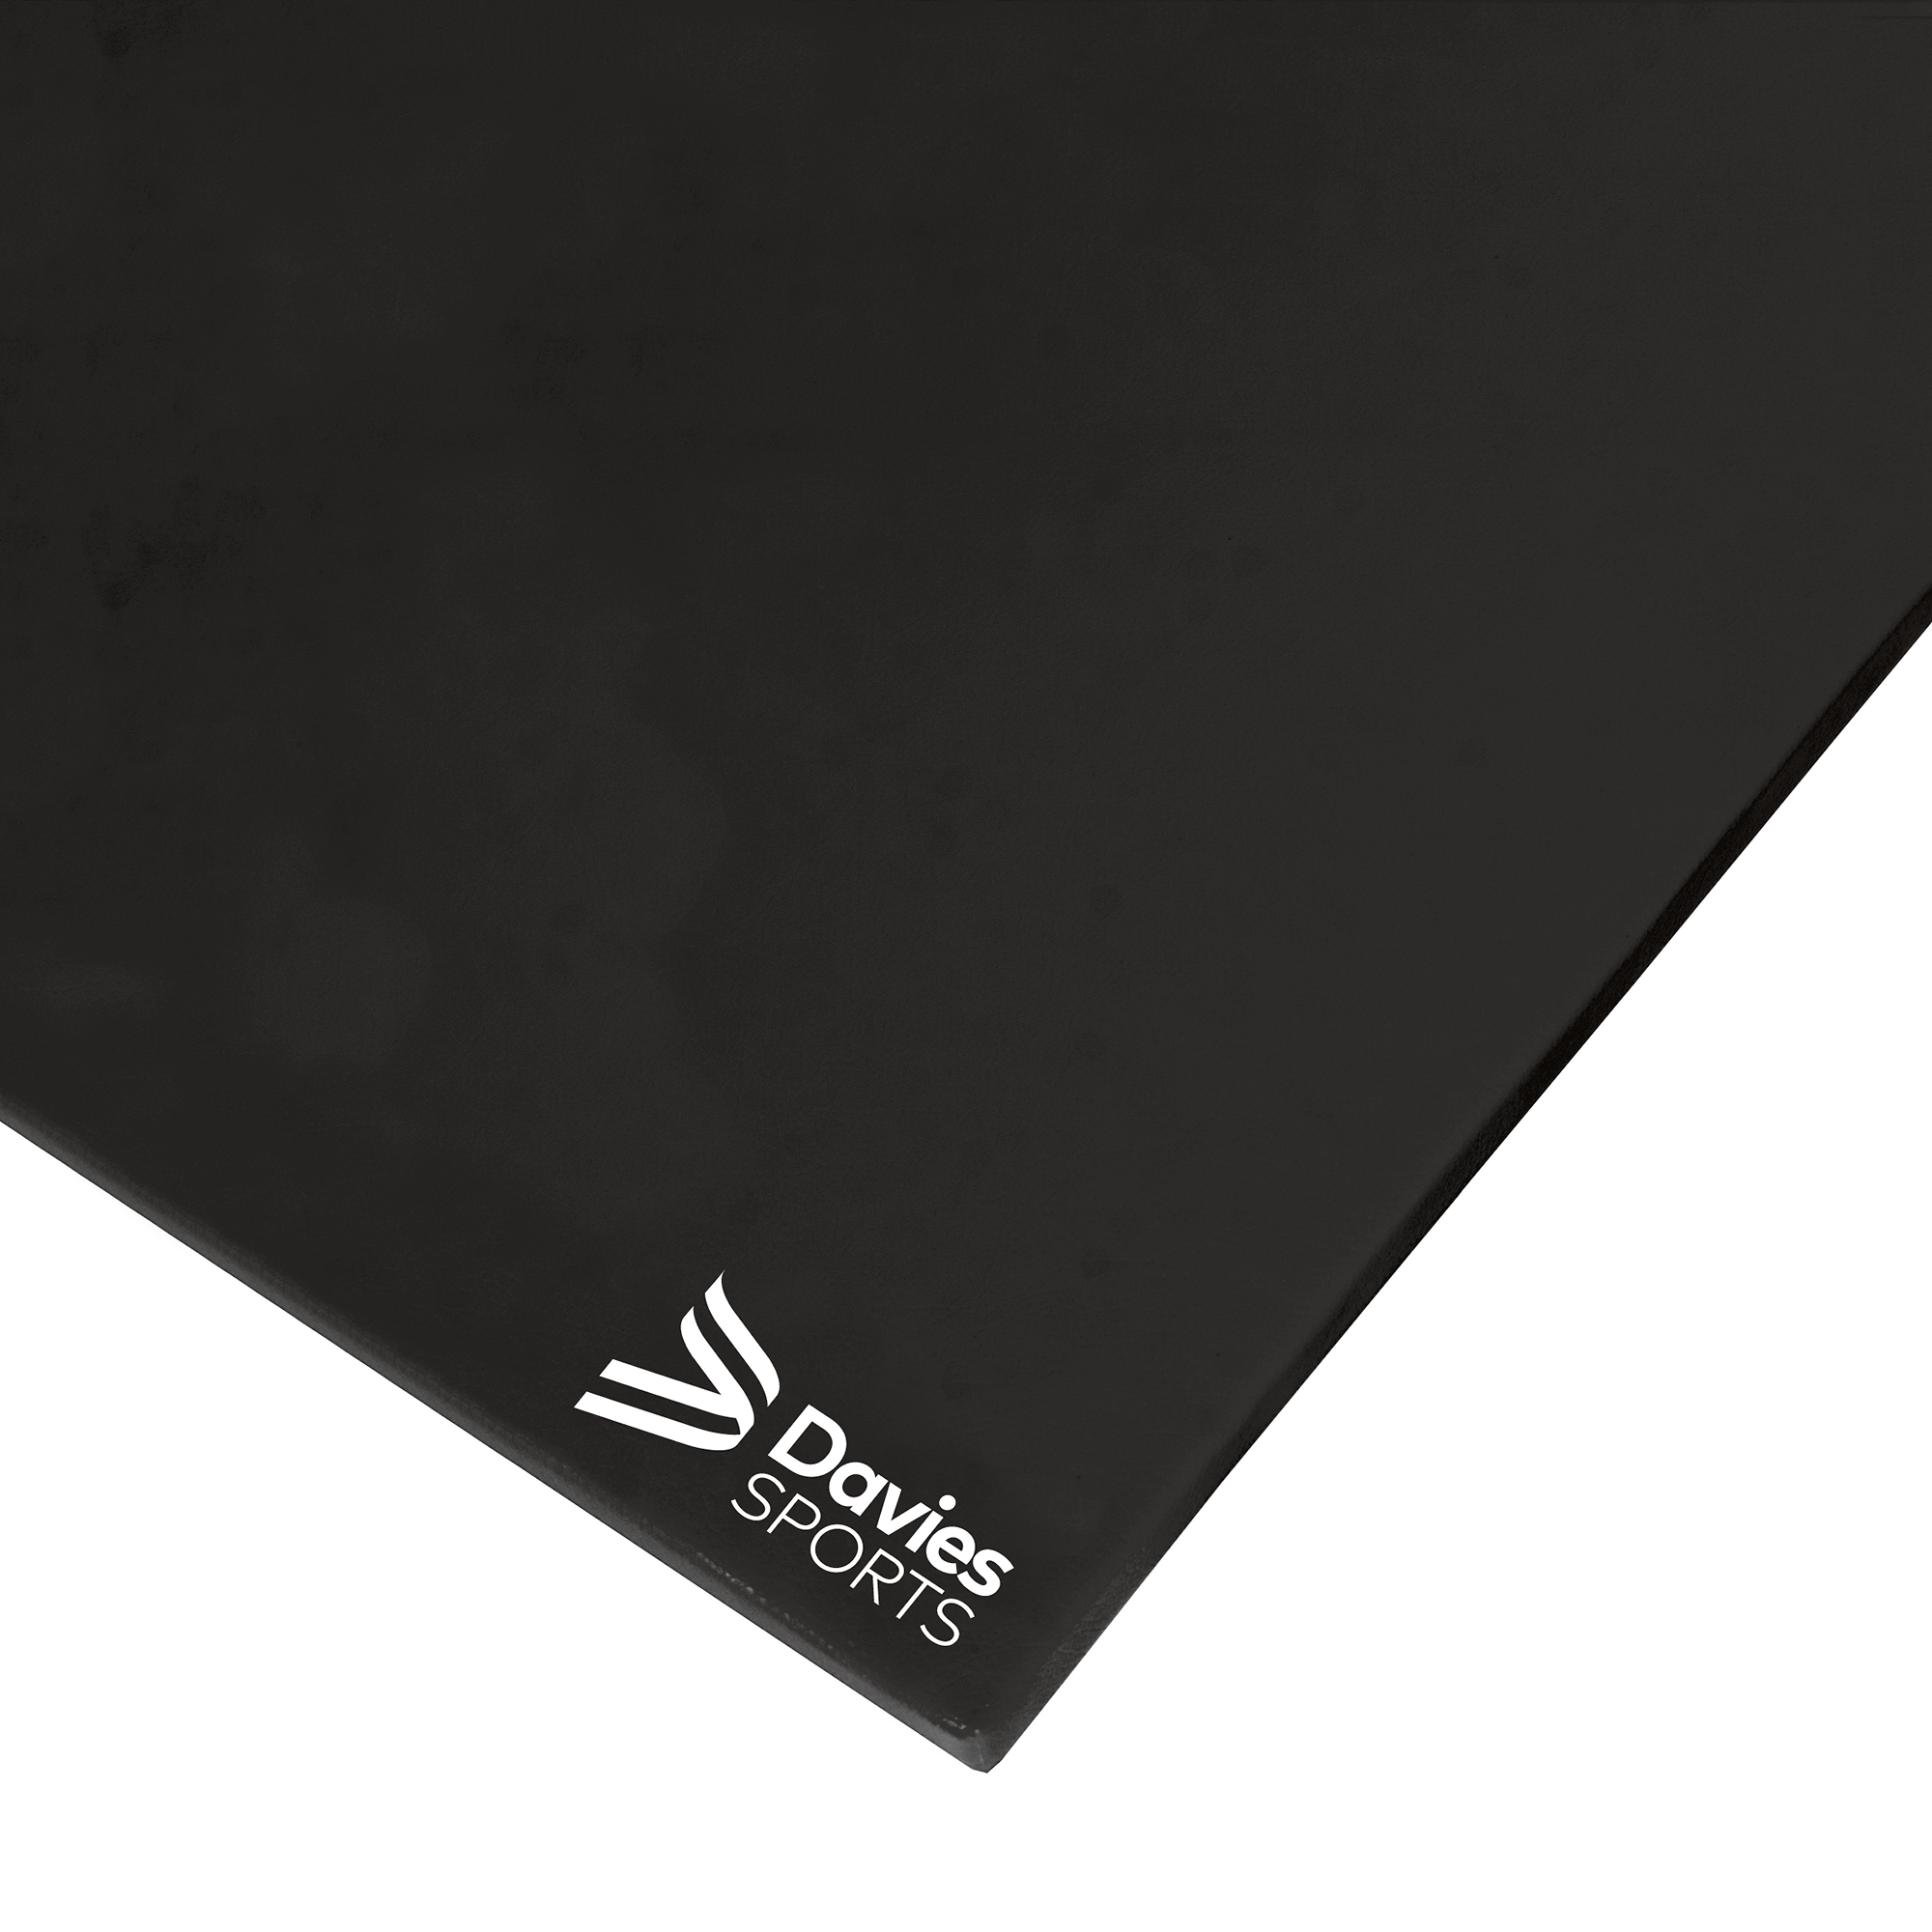 Davies Sports Agility Mat Standard Black - 3.66m x 1.22m x 50mm